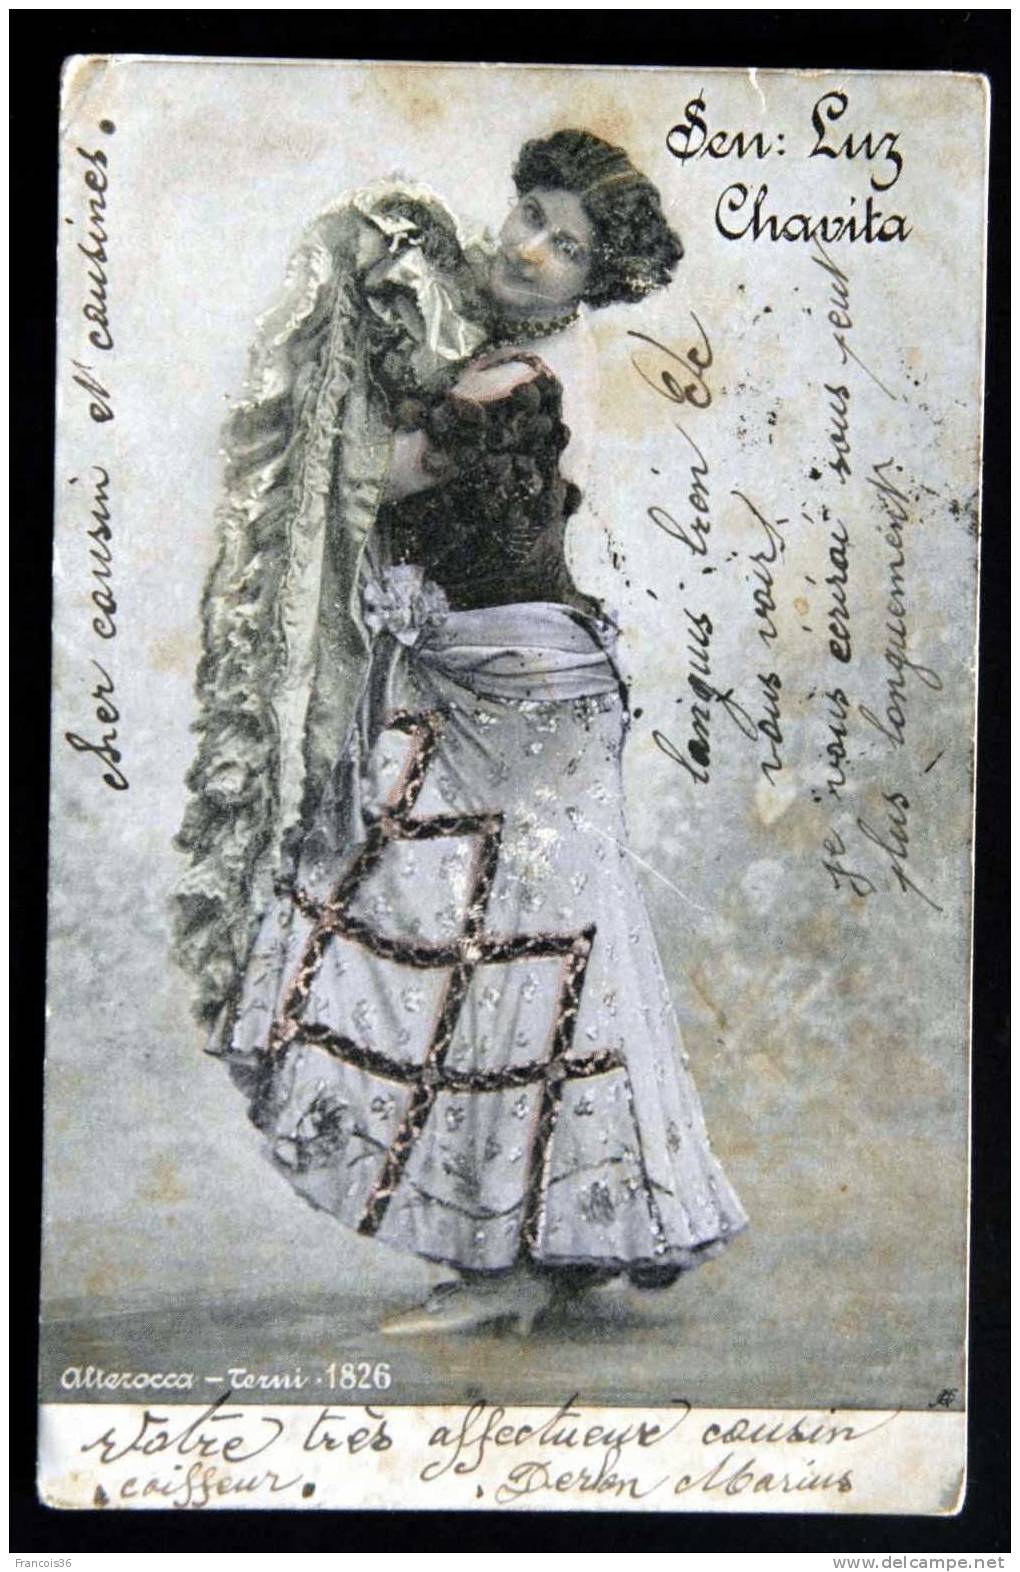 Sen Luz Chavita Alterocca Terni 1826 Actrice Cabaret Danse Beauté Espagnole élégance Spectacle -1903 Dos écrit - Cabarets